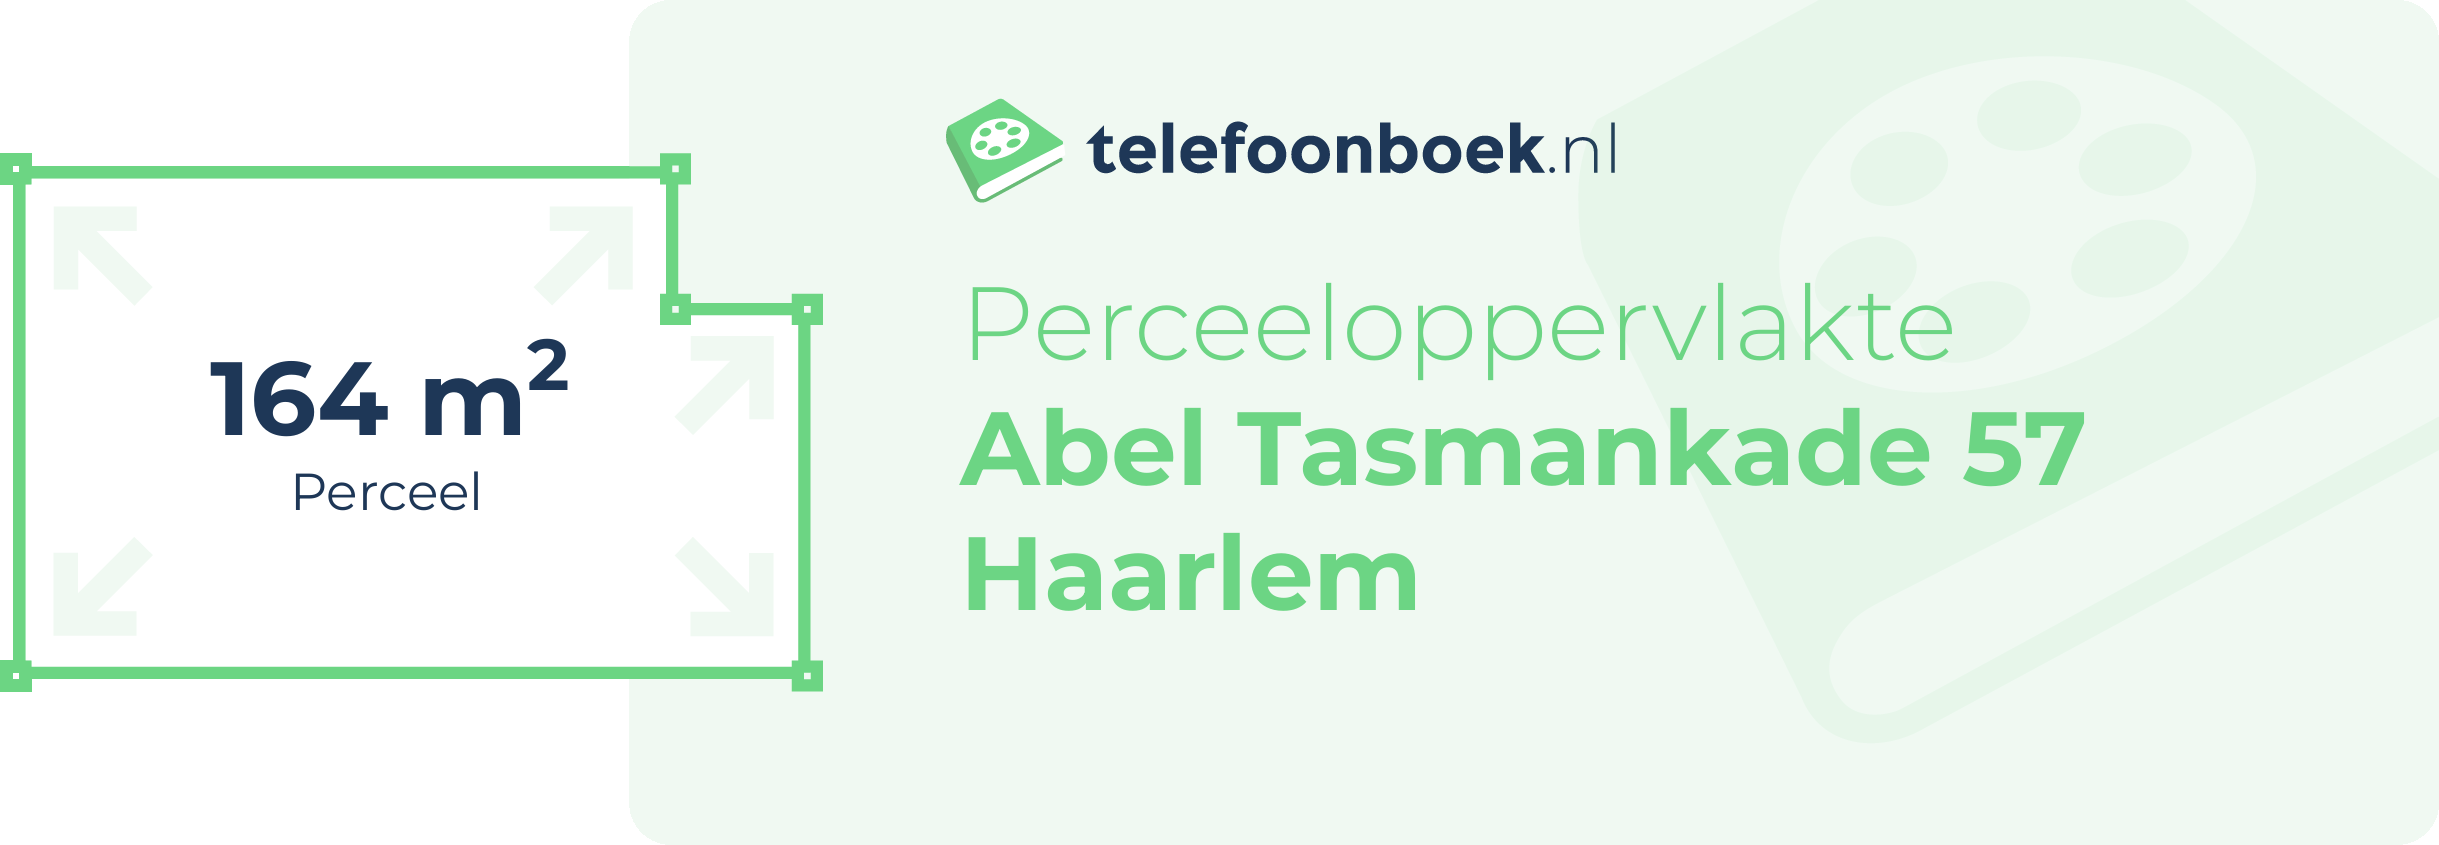 Perceeloppervlakte Abel Tasmankade 57 Haarlem